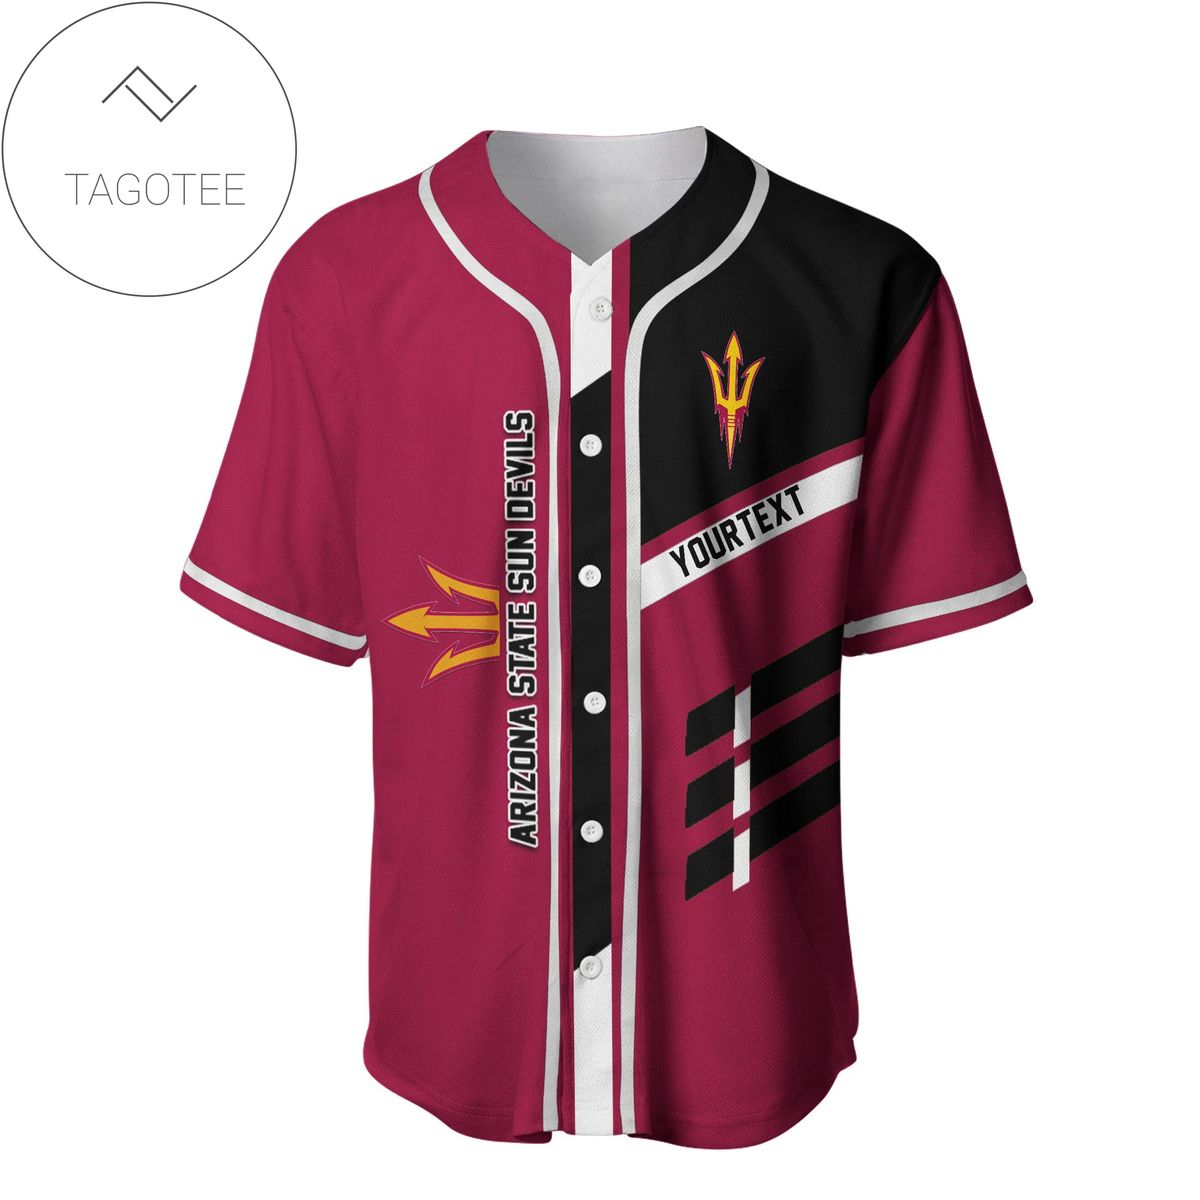 Personalized Arizona State Sun Devils Baseball Jersey - NCAA